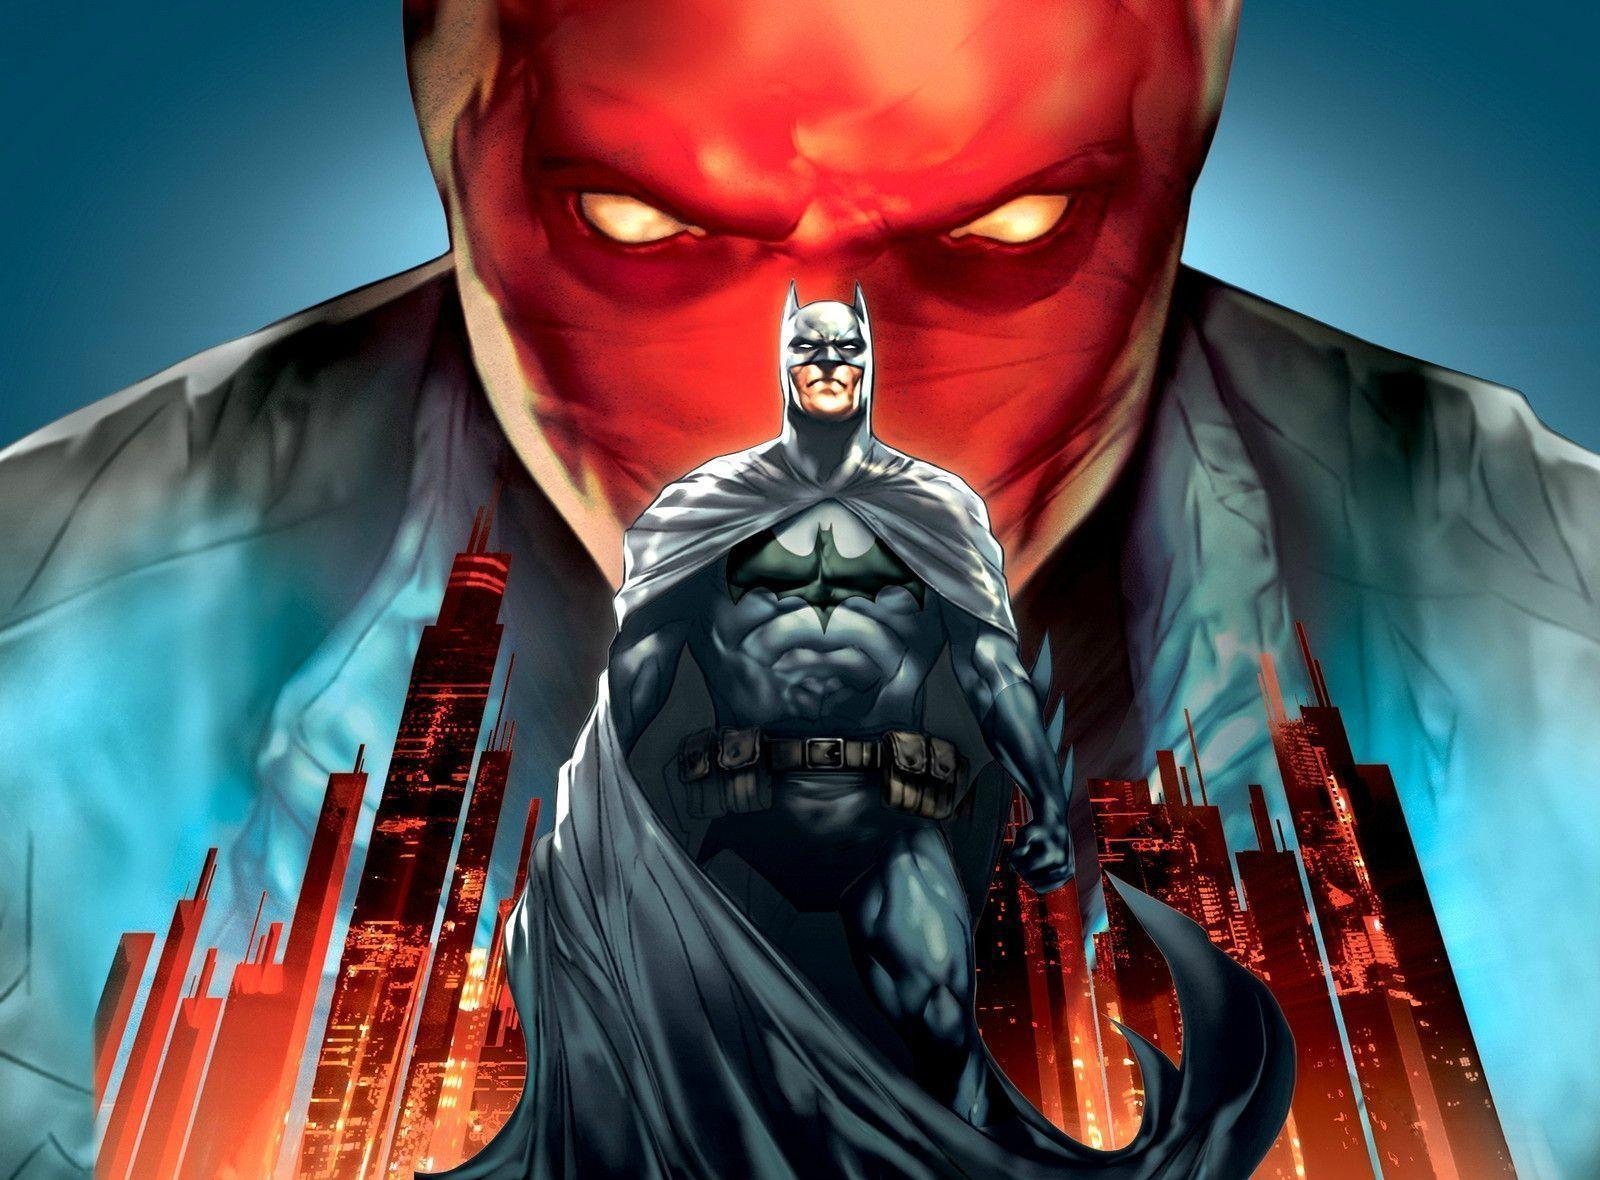 Batman Under The Red Hood Wallpaper 38307 HD Wallpaper. pictwalls